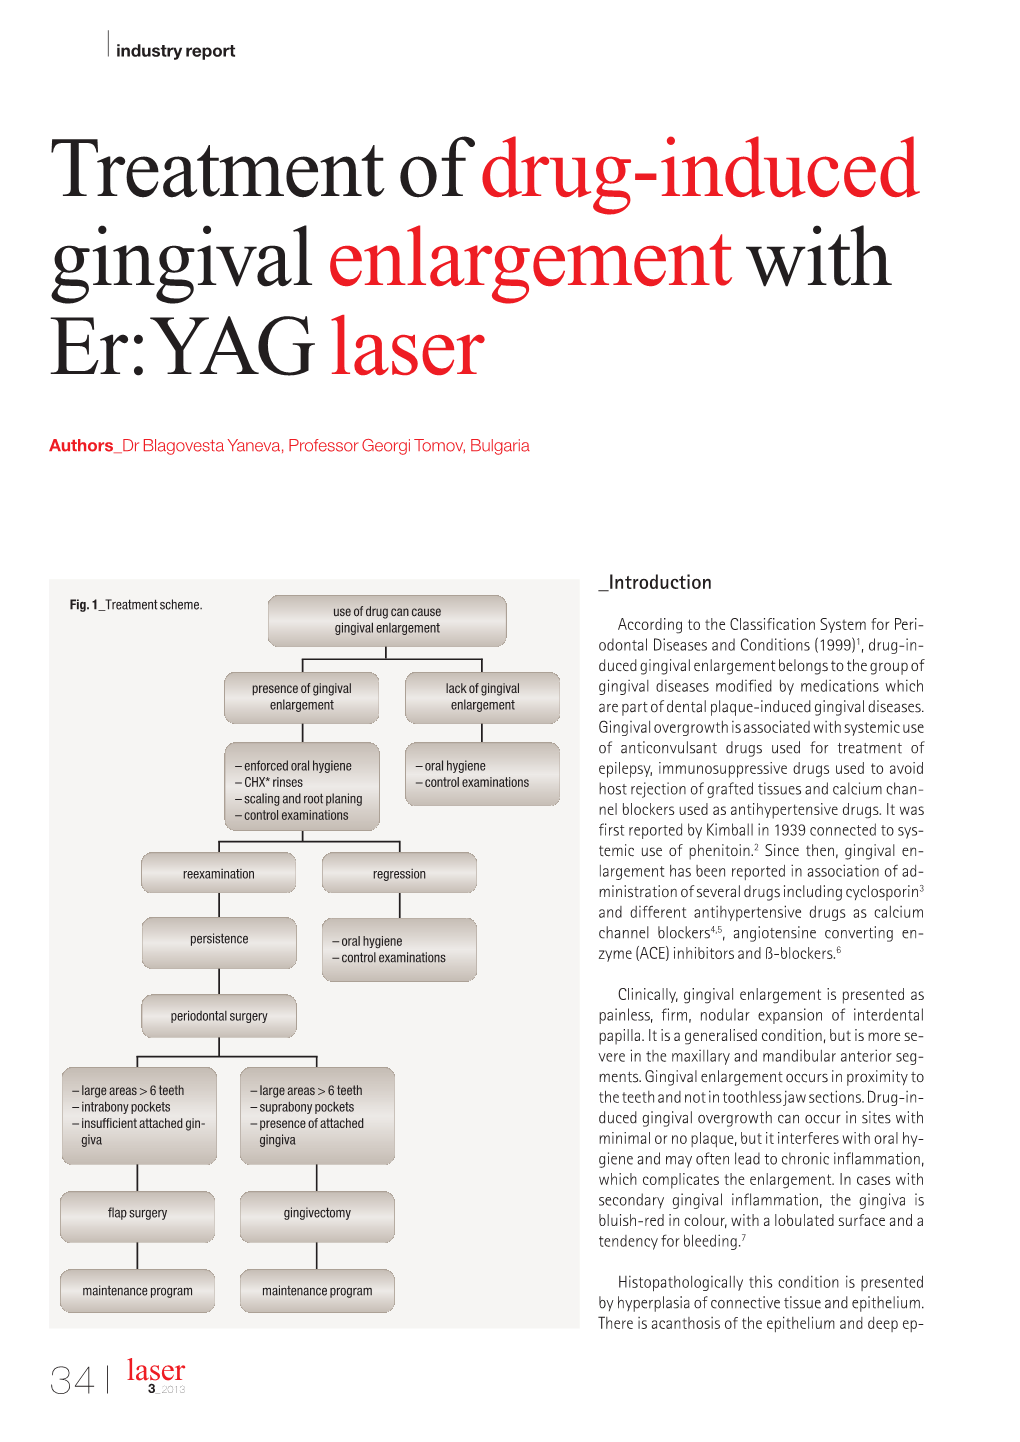 Treatment of Drug-Induced Gingival Enlargement with Er:YAG Laser